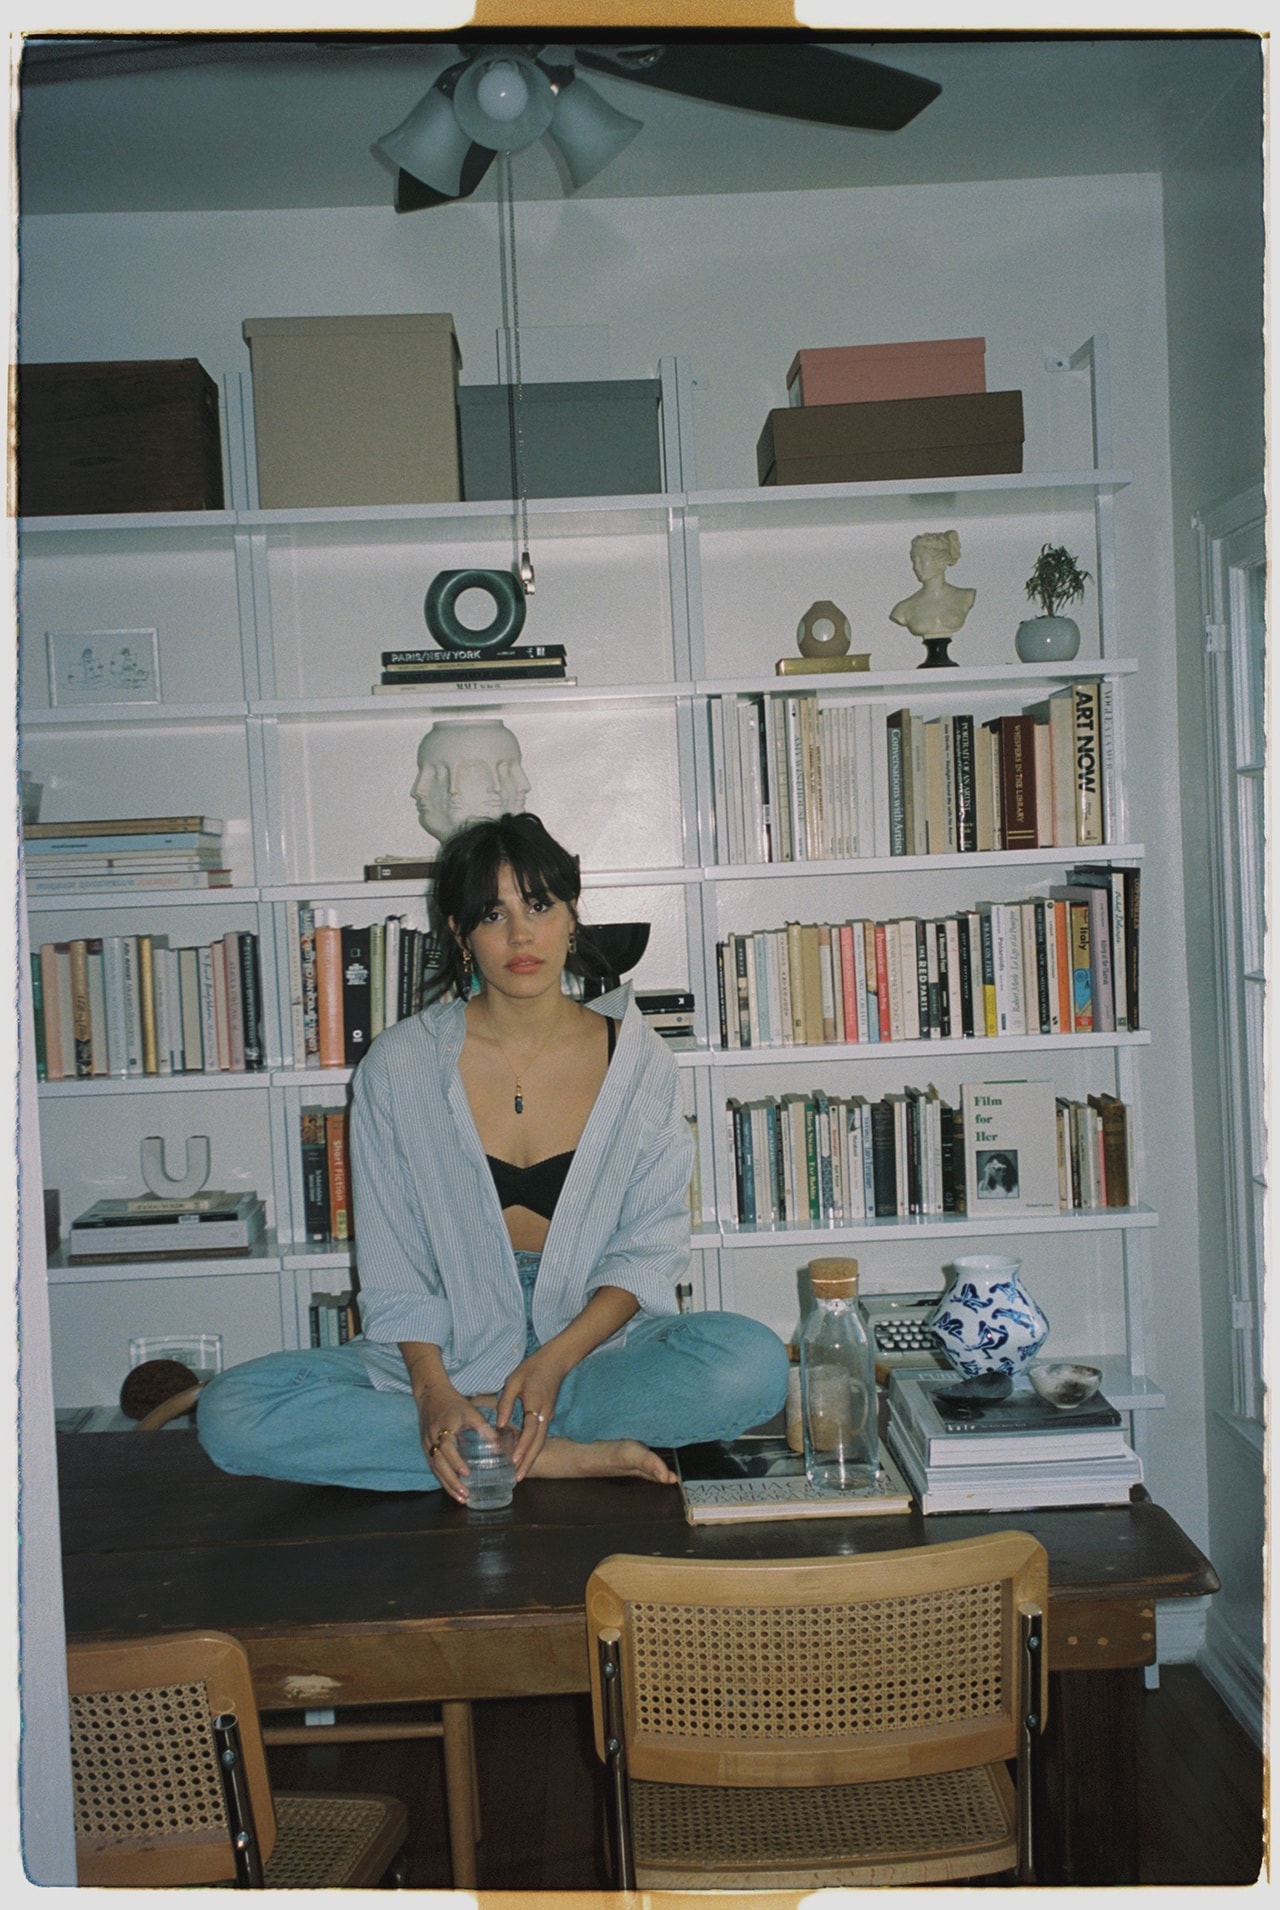 Orion Carloto Film for Her Author Poet Writer Social Media Influencer Home Book Shelf